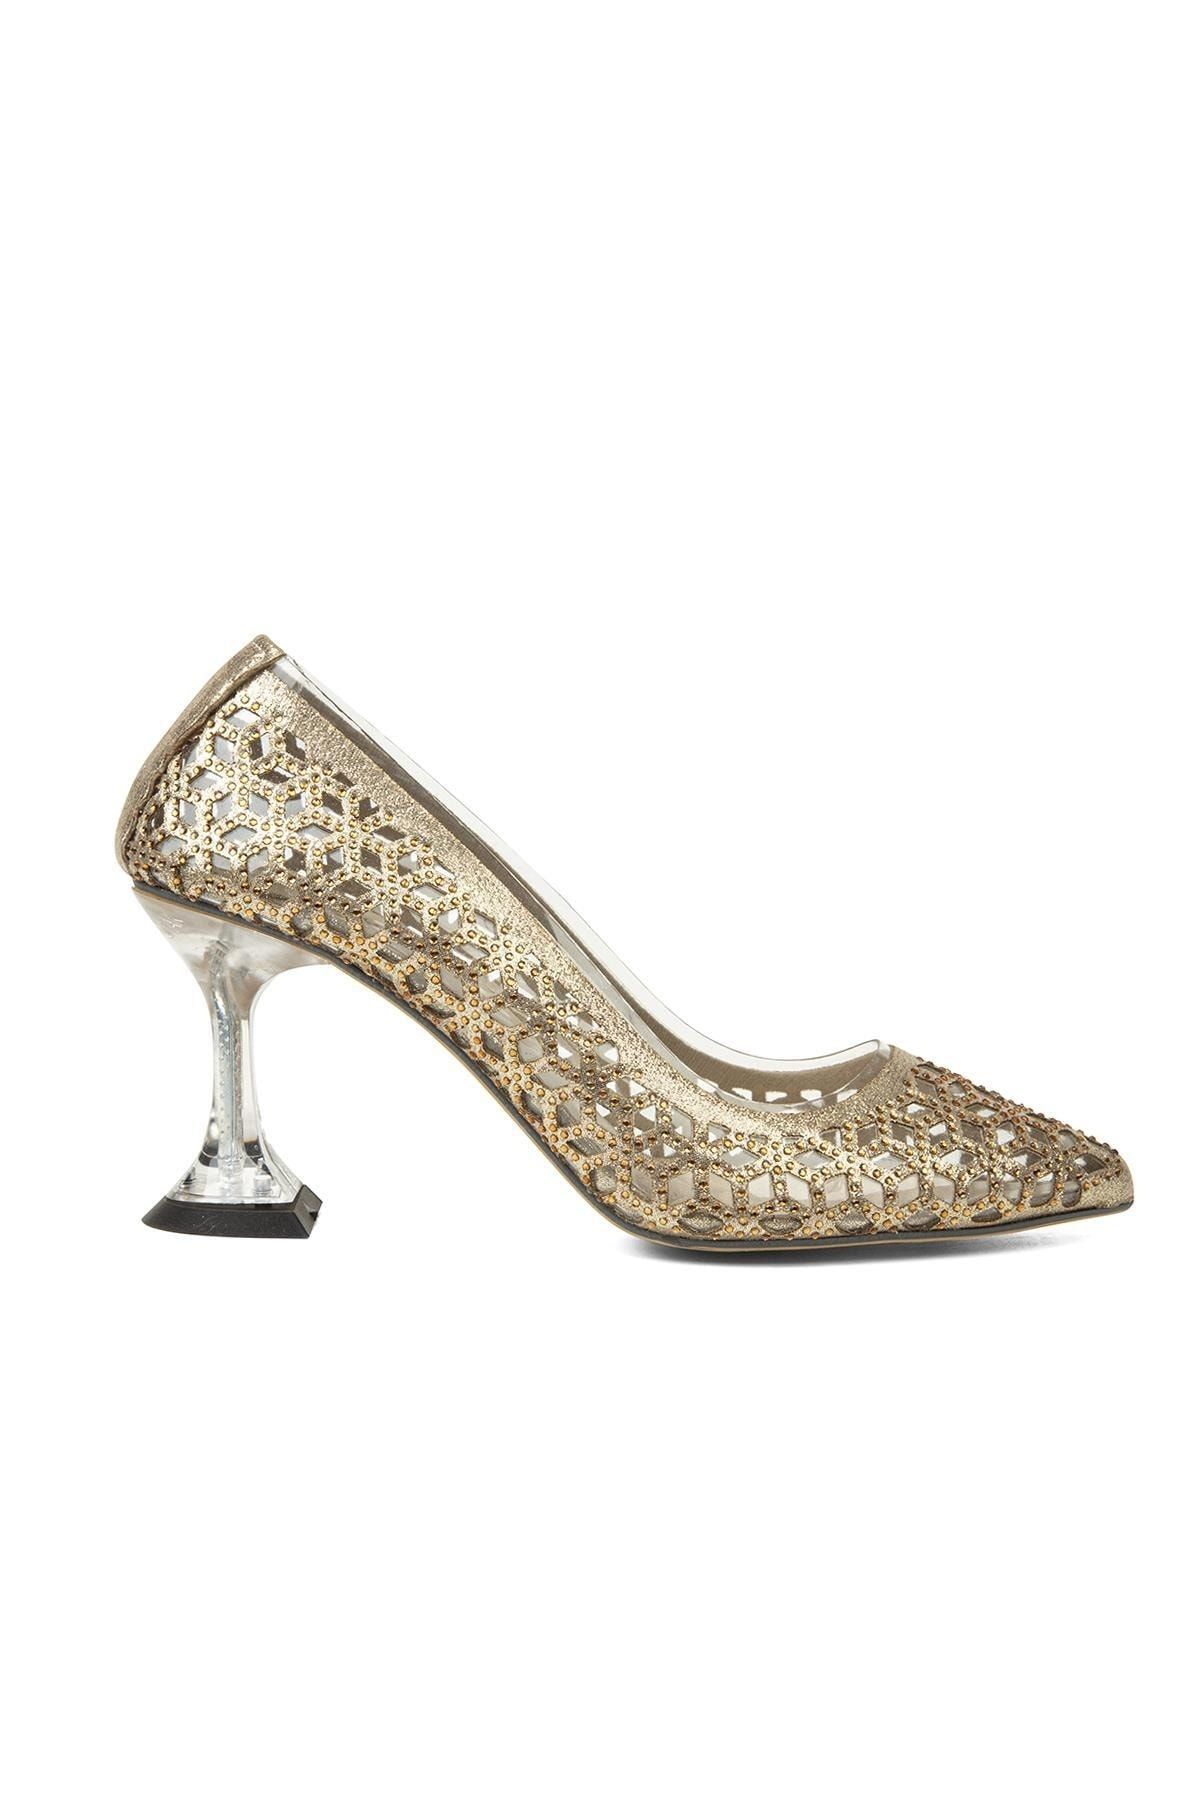 Pierre Cardin ® | Pc-51744-3478 Light Altın - Kadın Topuklu Ayakkabı